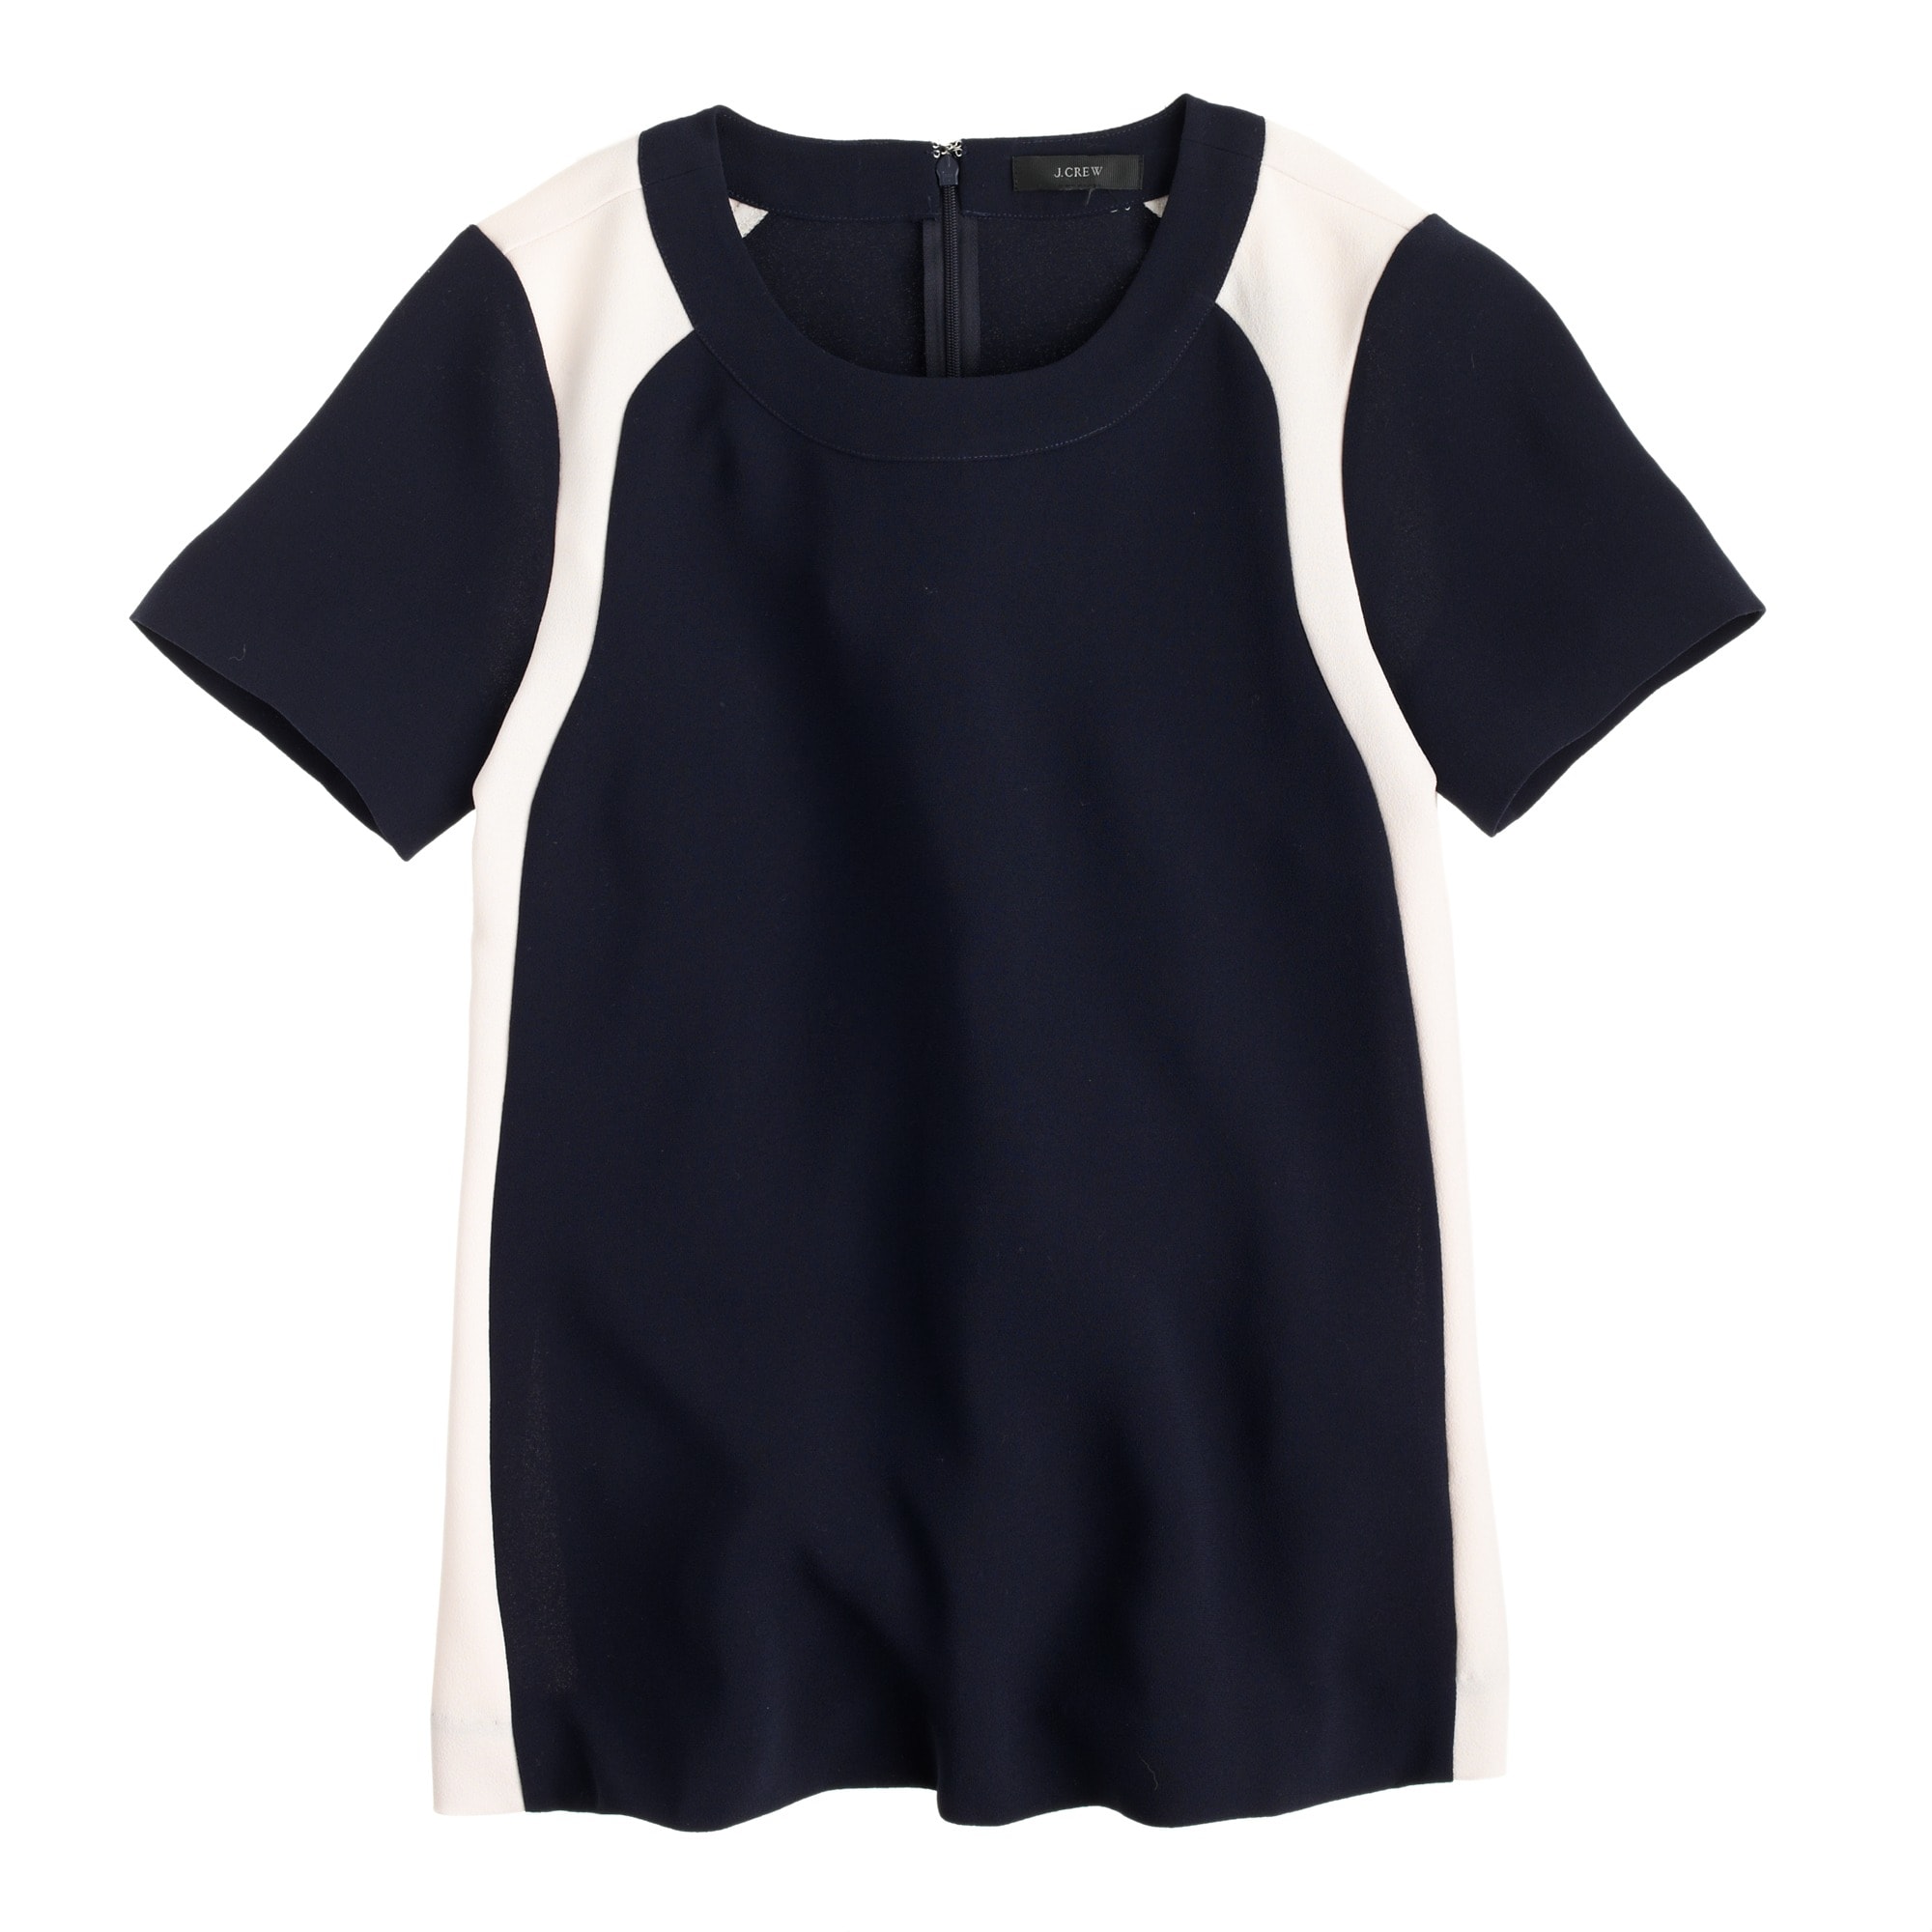 Colorblock crepe top : Women tops & blouses | J.Crew